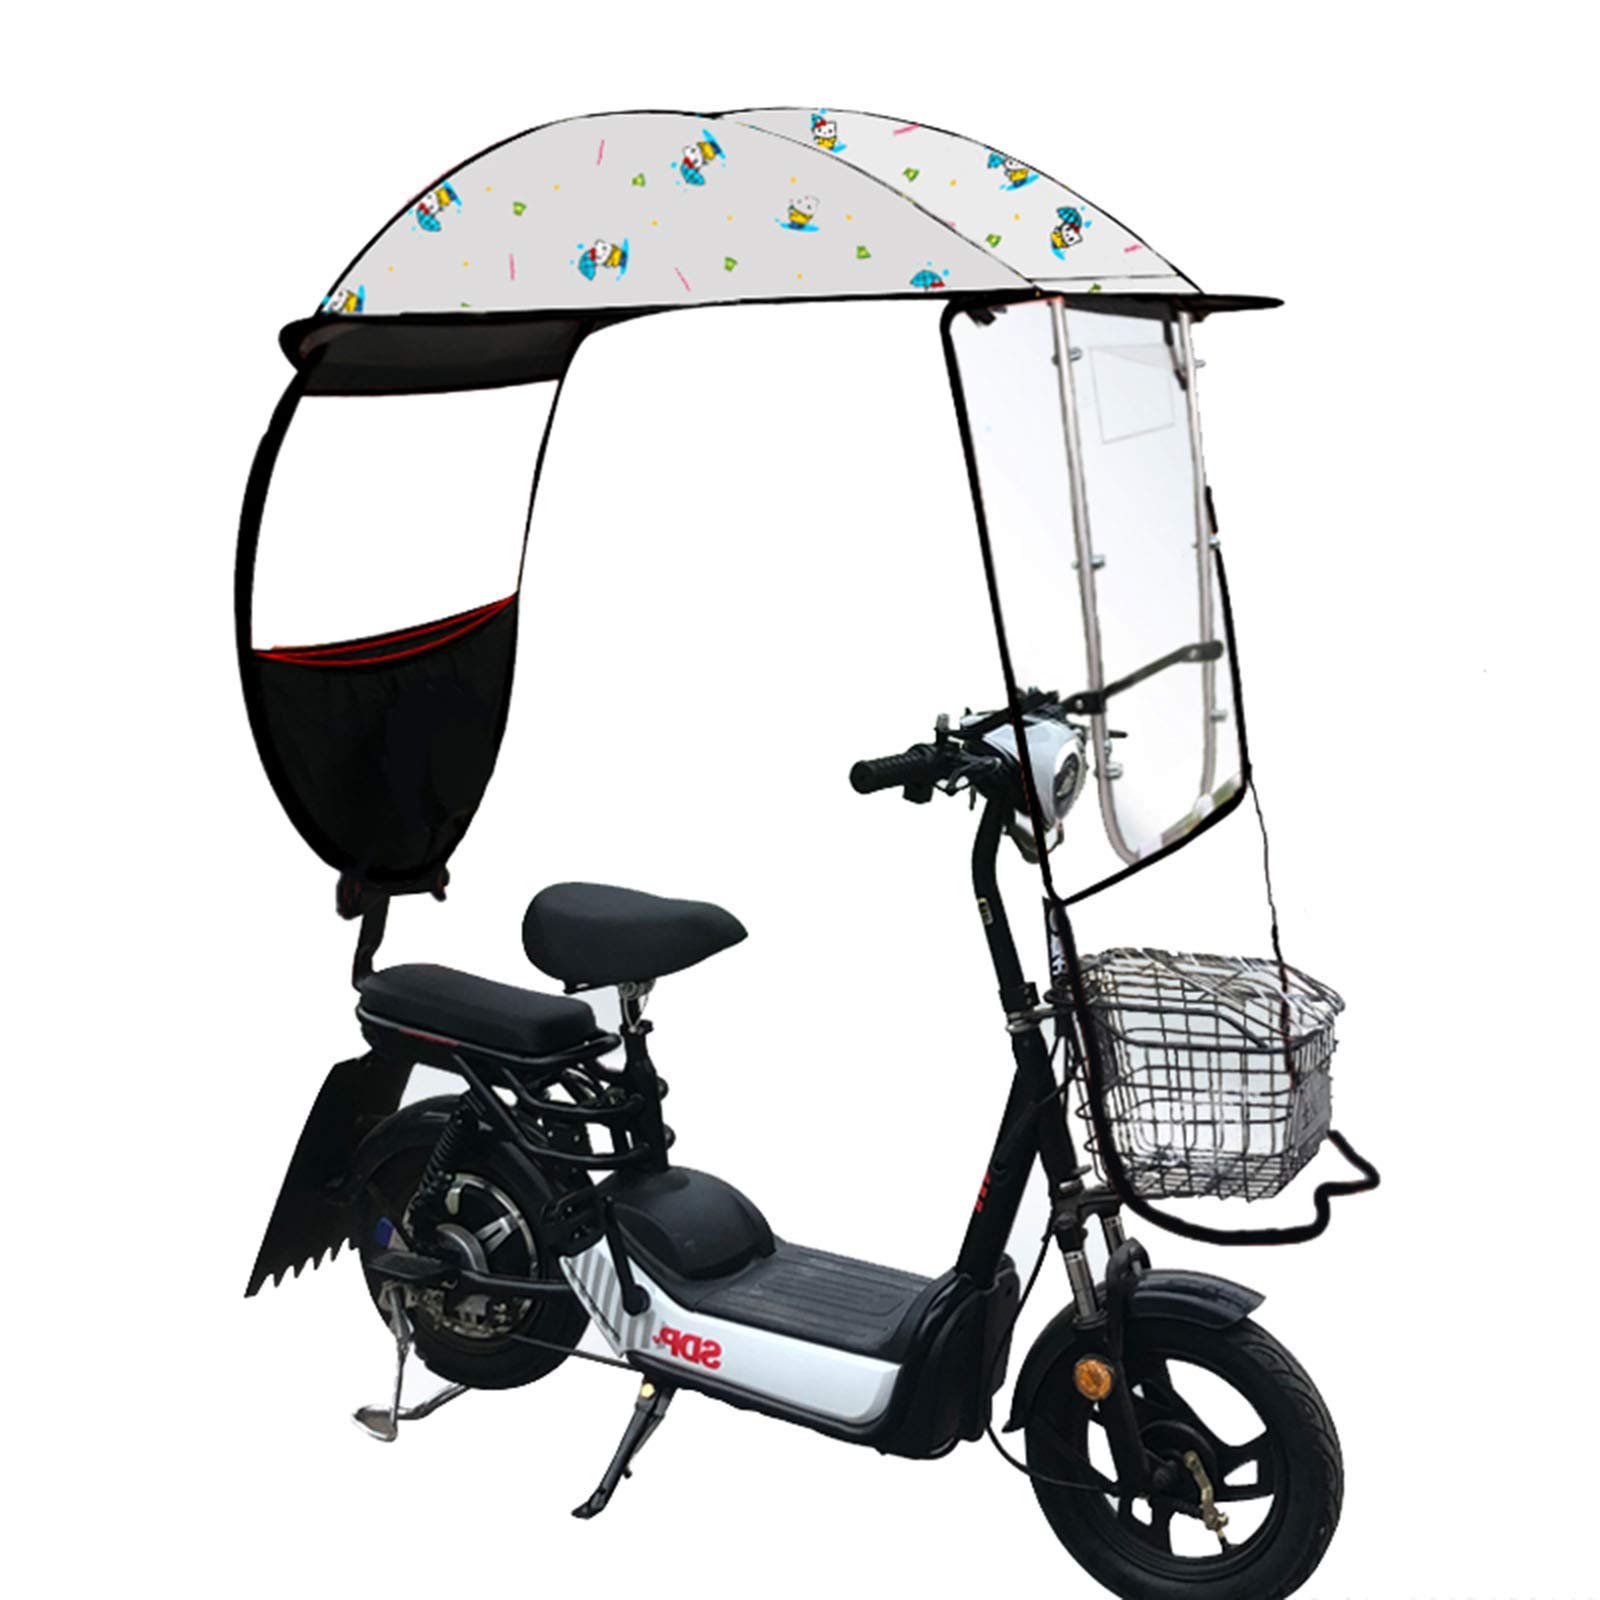 Universelle Sonnenschutzabdeckung für Elektromotorräder, wasserdichte Abdeckung für Auto-Scooter-Regenschirme, Sonnenschutz-Regenschutz zum Schutz vor Wind und Regen vor Sonnenlicht, 5, A (6 B) ( von WQZStar